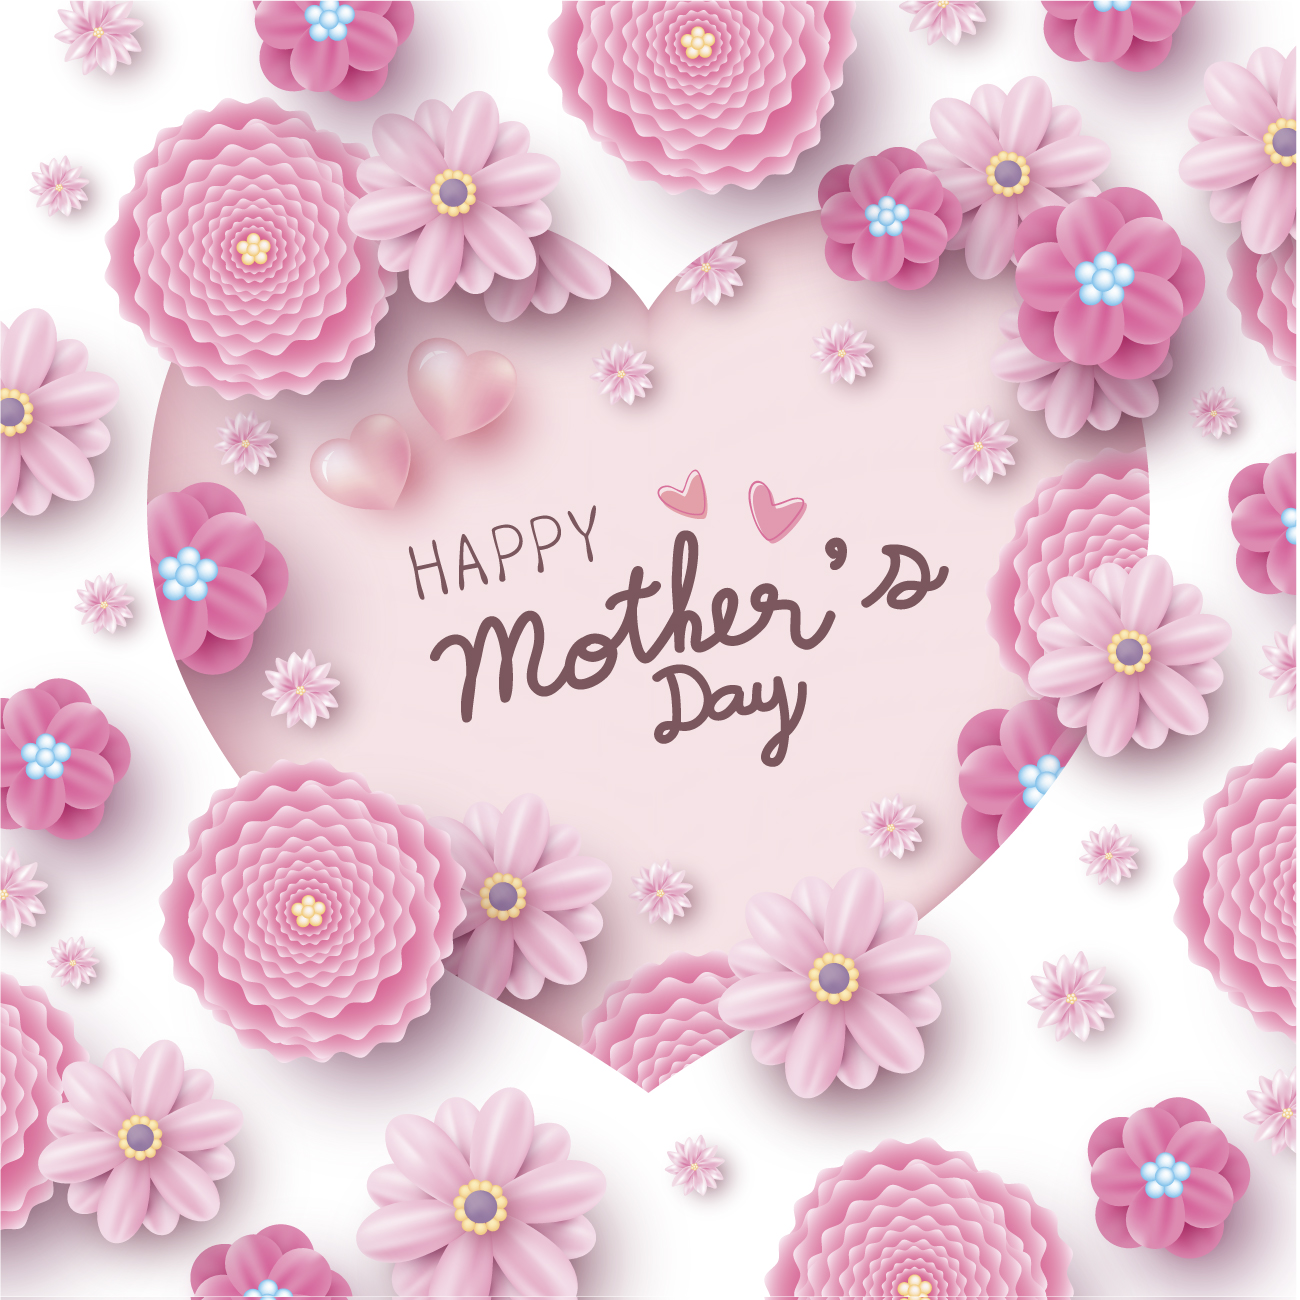 母亲节贺卡纸艺心形与粉红花卉概念设计矢量素材 Happy m